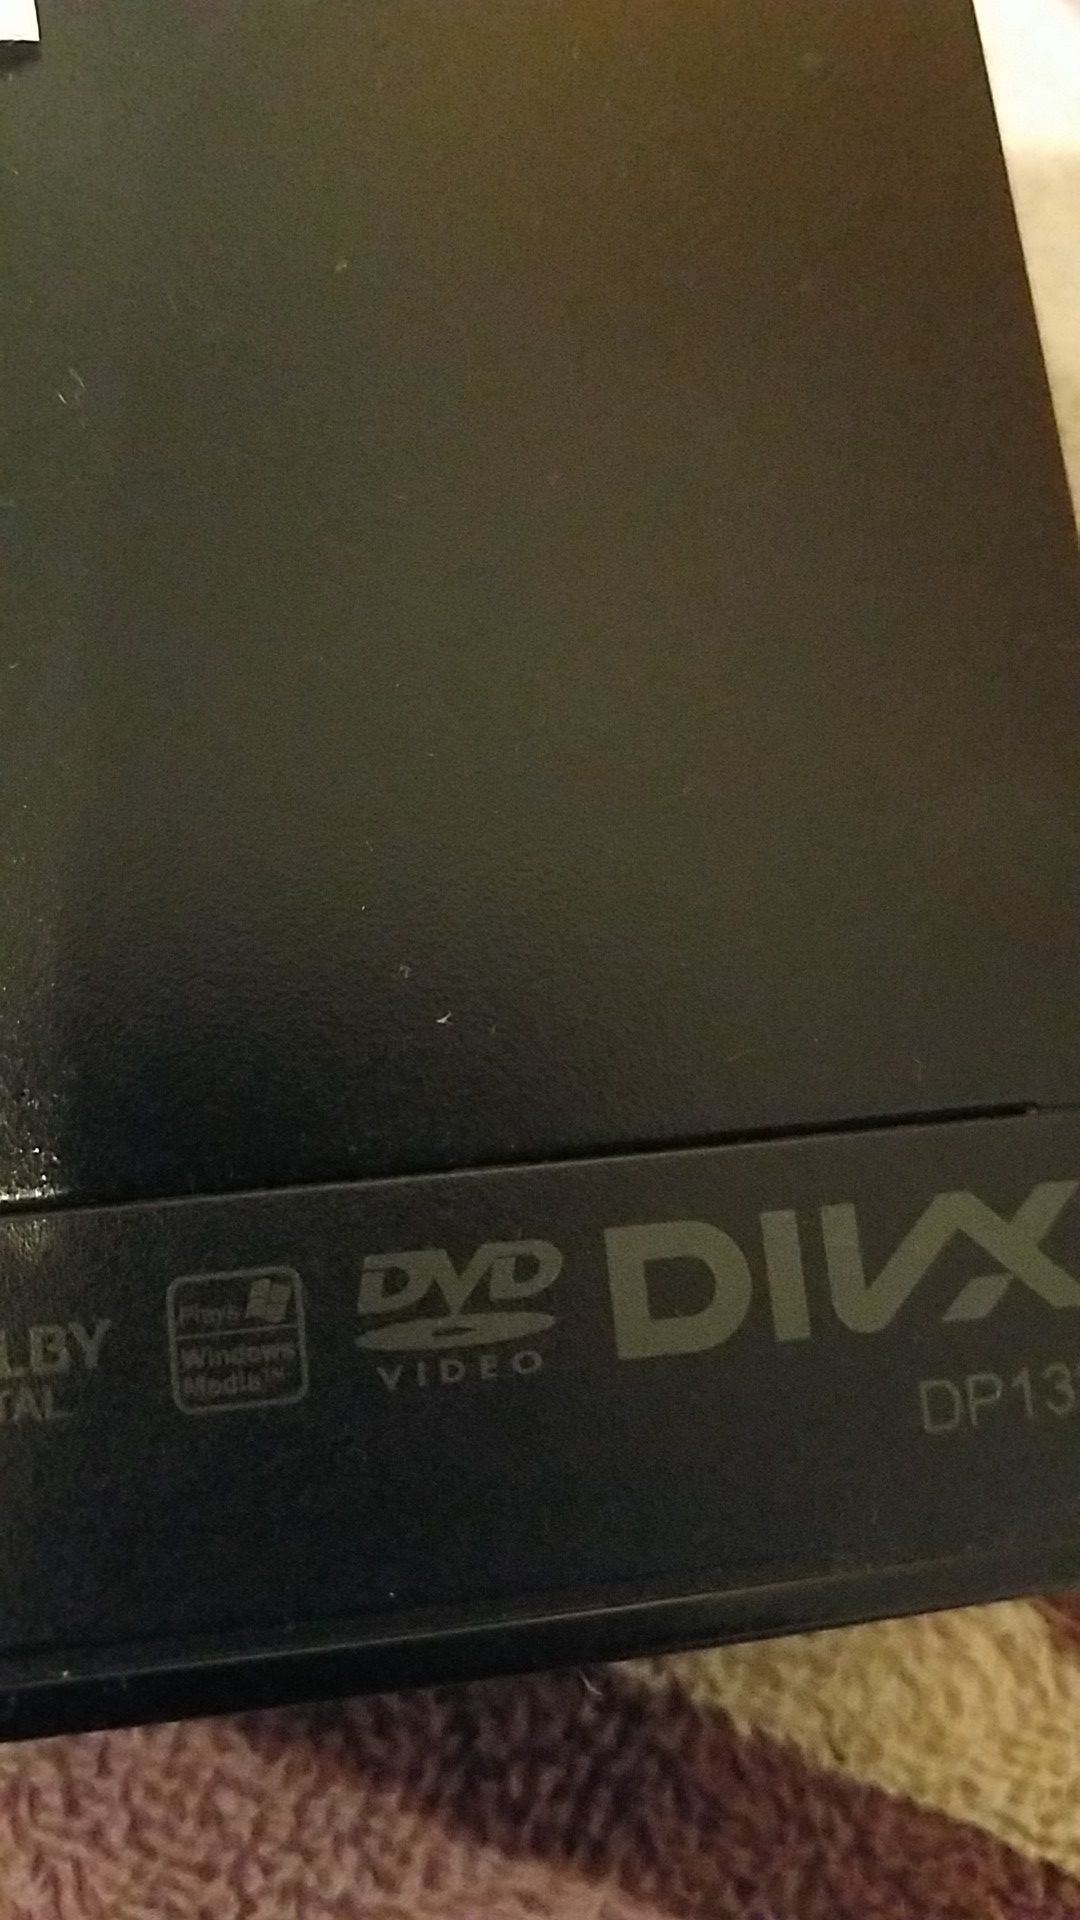 DVD / CD PLAYER DIVX DP132